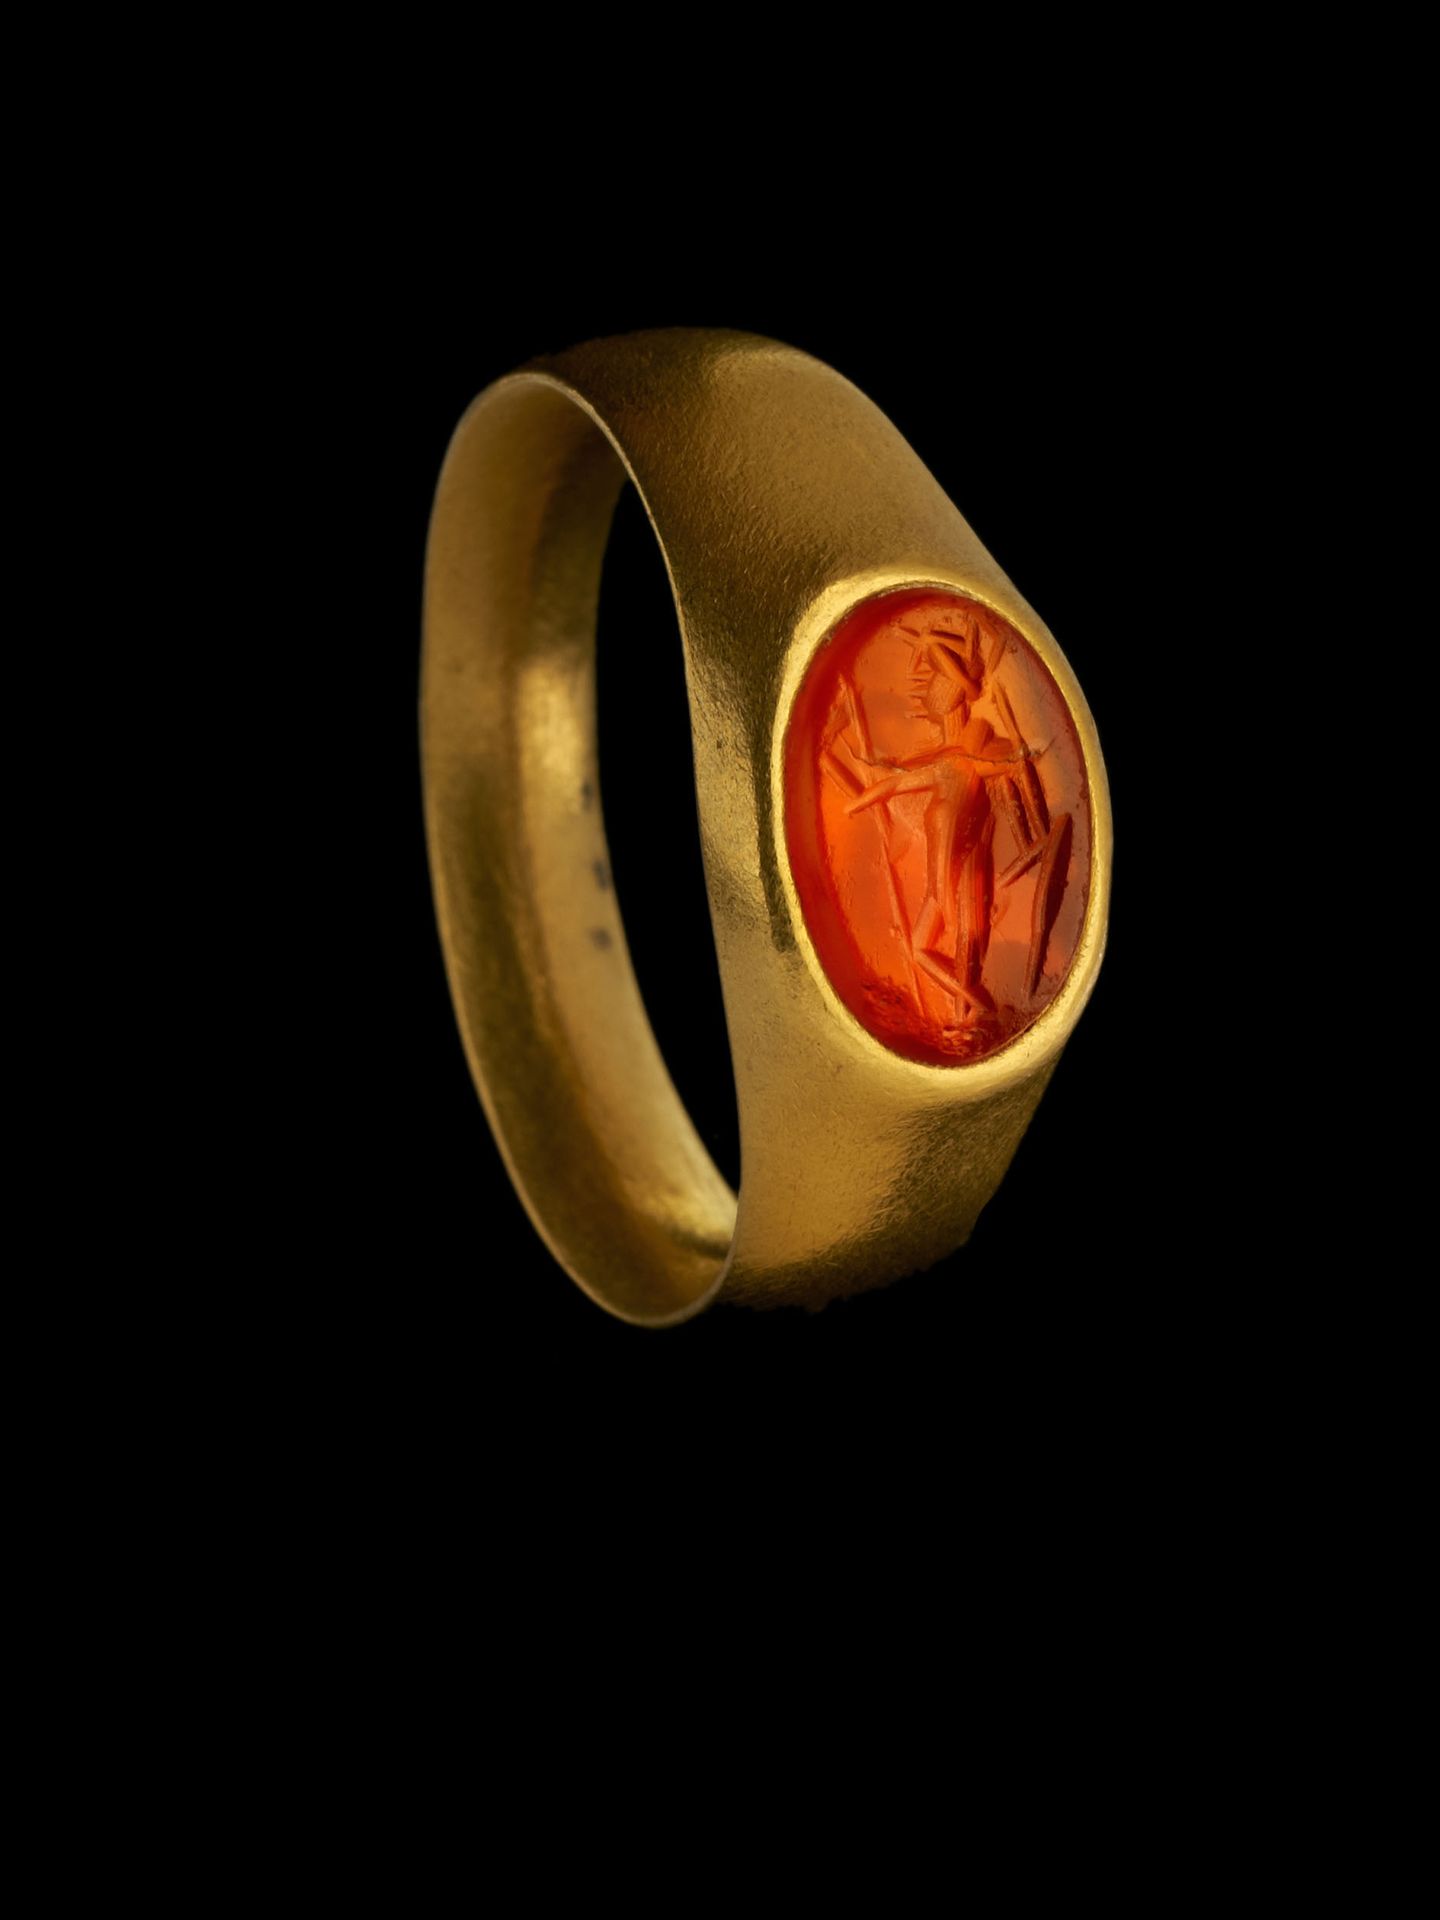 Null 戒指

罗马艺术，2世纪。

黄金，镶嵌在红玉髓上的凹印。火星。

凹版画。10 x 13毫米；TD 69；17克

镶嵌有罗马红玉髓凹雕的金戒指。
&hellip;